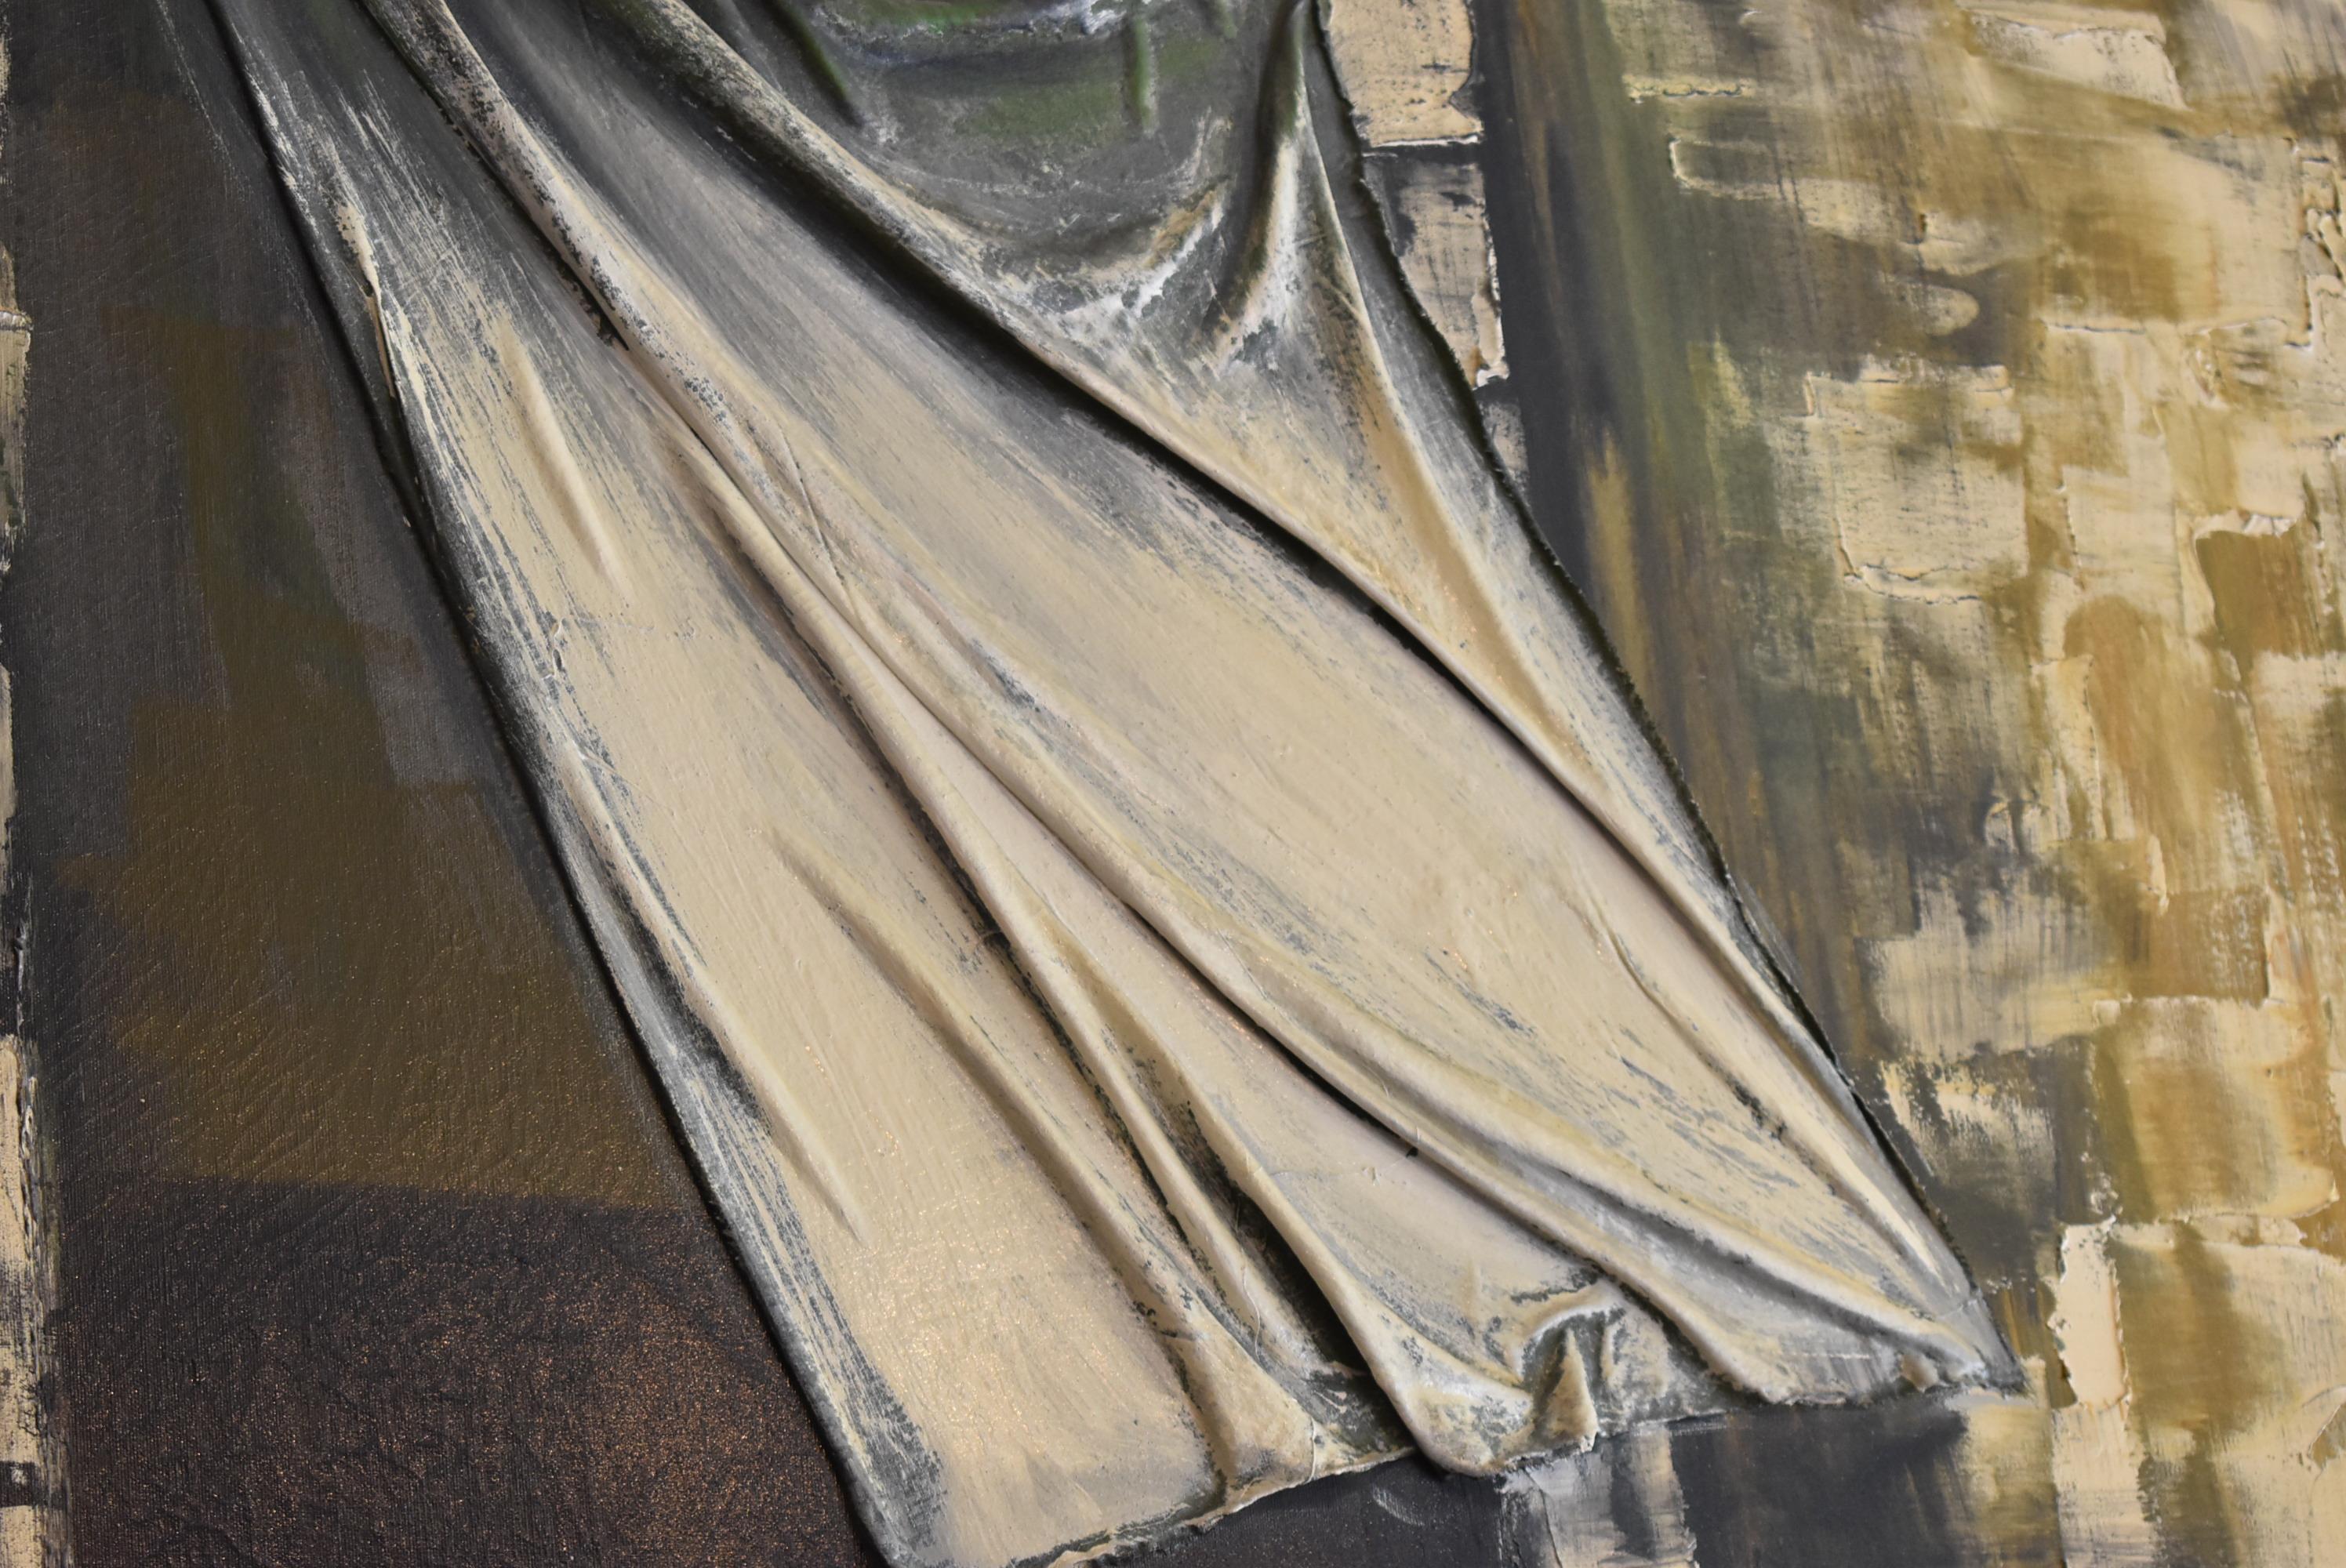 Huile originale sur toile de l'artiste impressionniste Lee Reynolds. Chat noir marchant sur le rebord d'une fenêtre d'une maison en pierre avec un rideau tridimensionnel soufflant. Léger craquelage général. La taille de l'image mesure 60.25